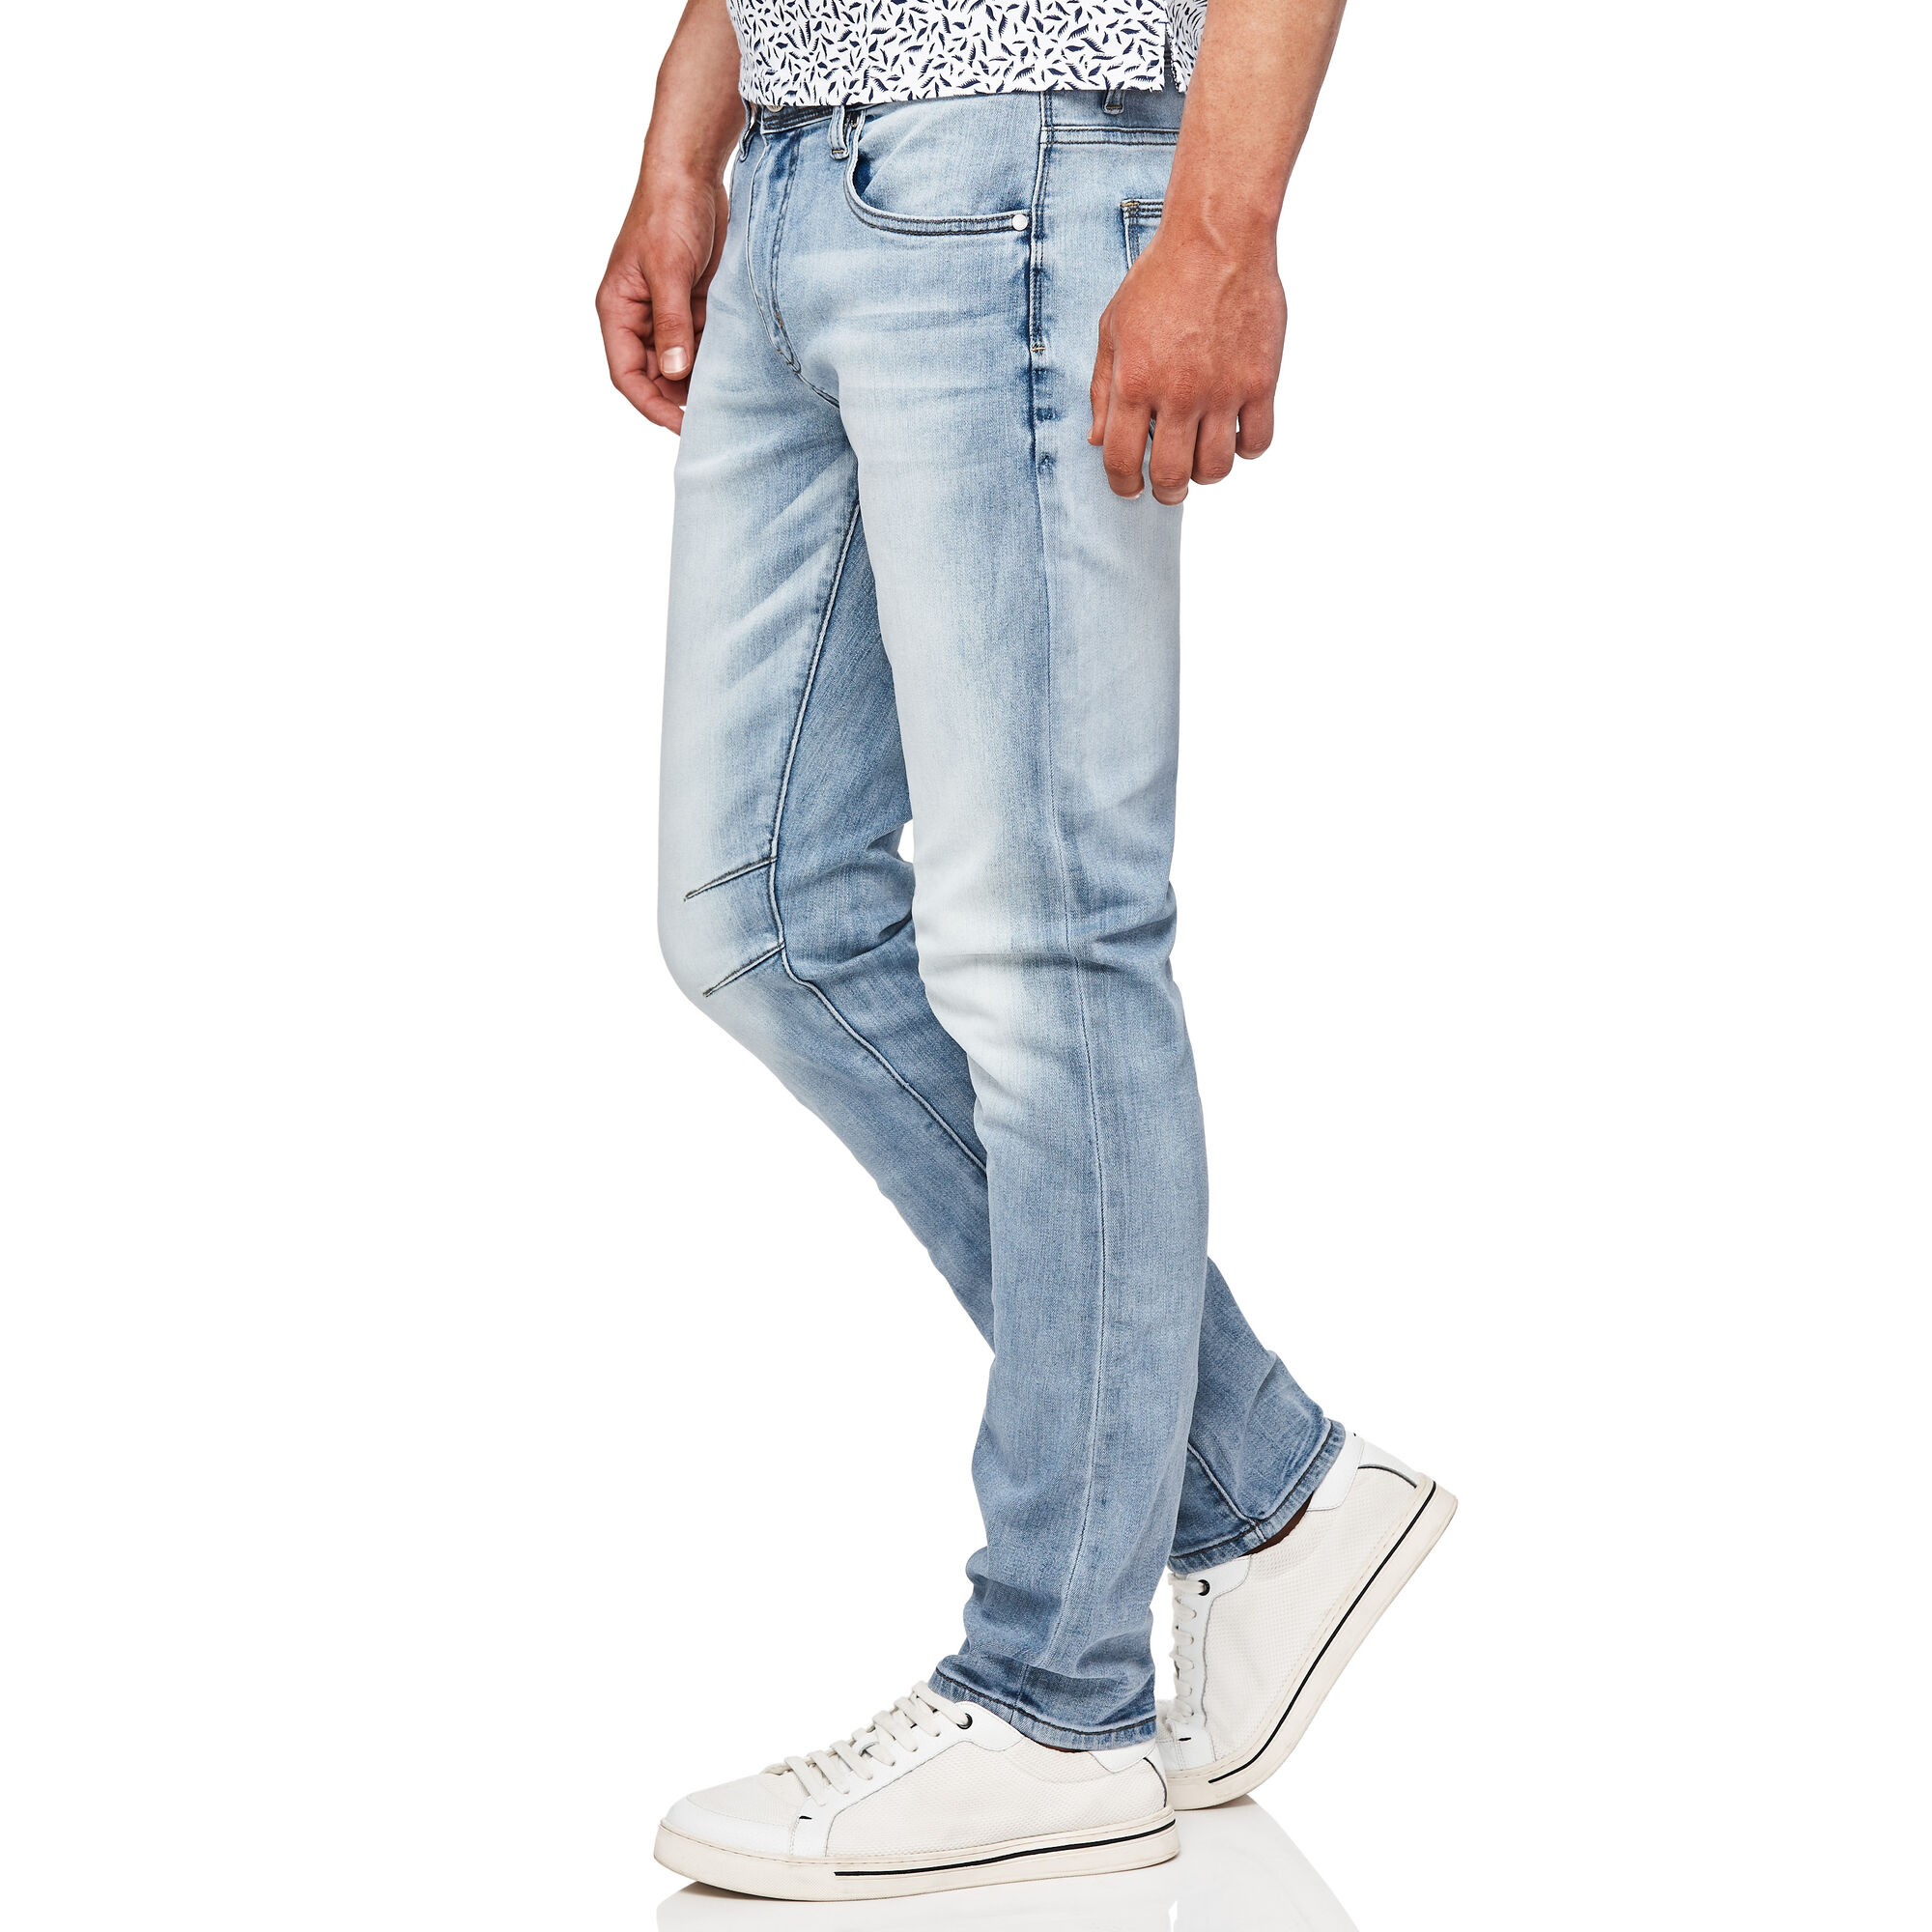 Baptiste - Vintage Indigo - Vintage Wash Stretch Denim Jeans | Jeans ...